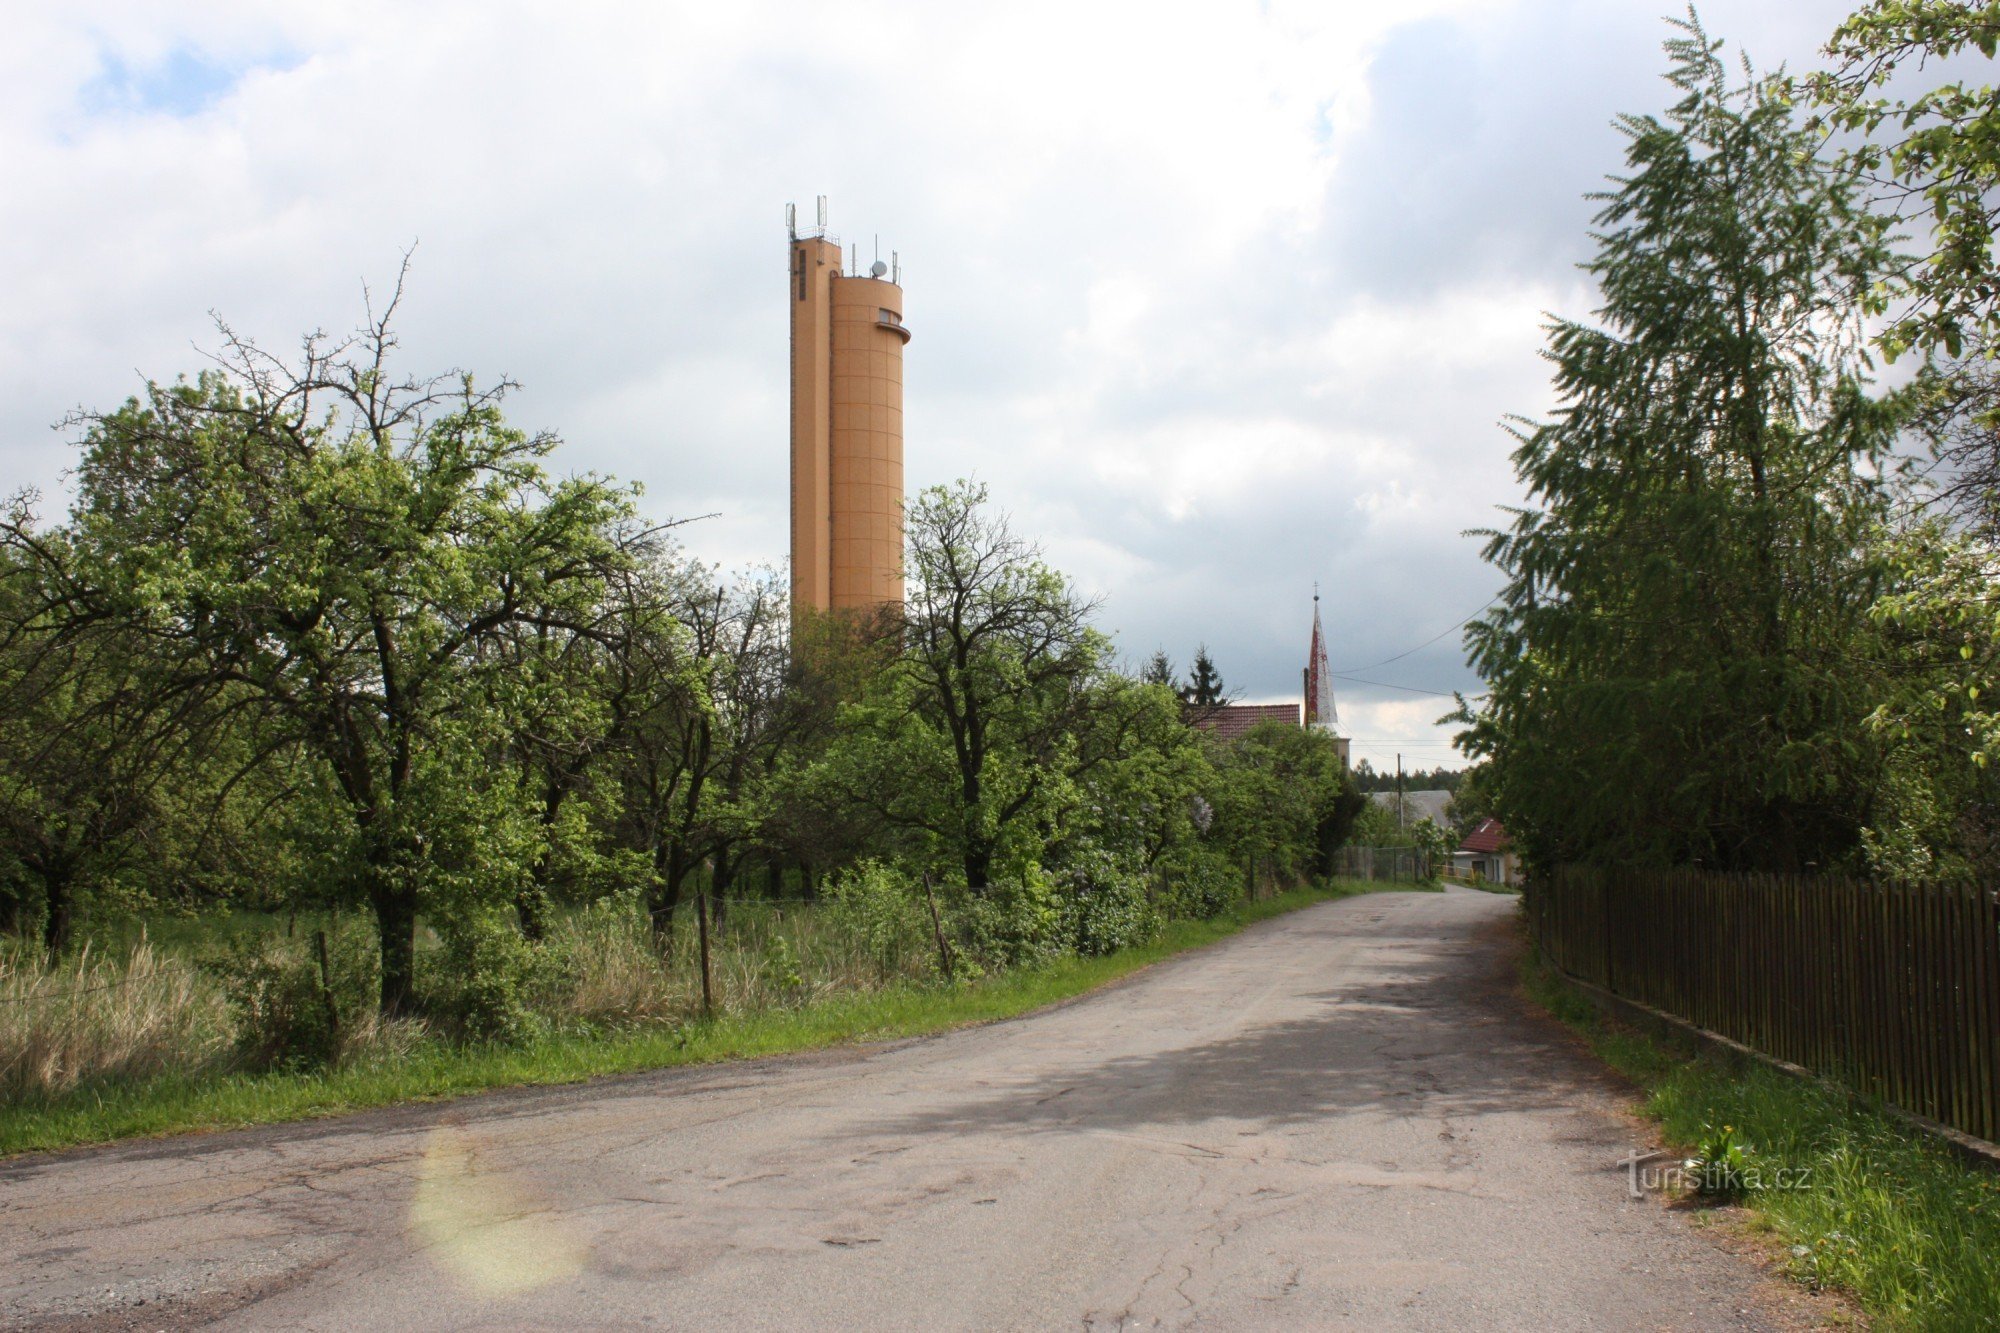 Dwie zabytki osady Práčov - kościół i wieża ciśnień